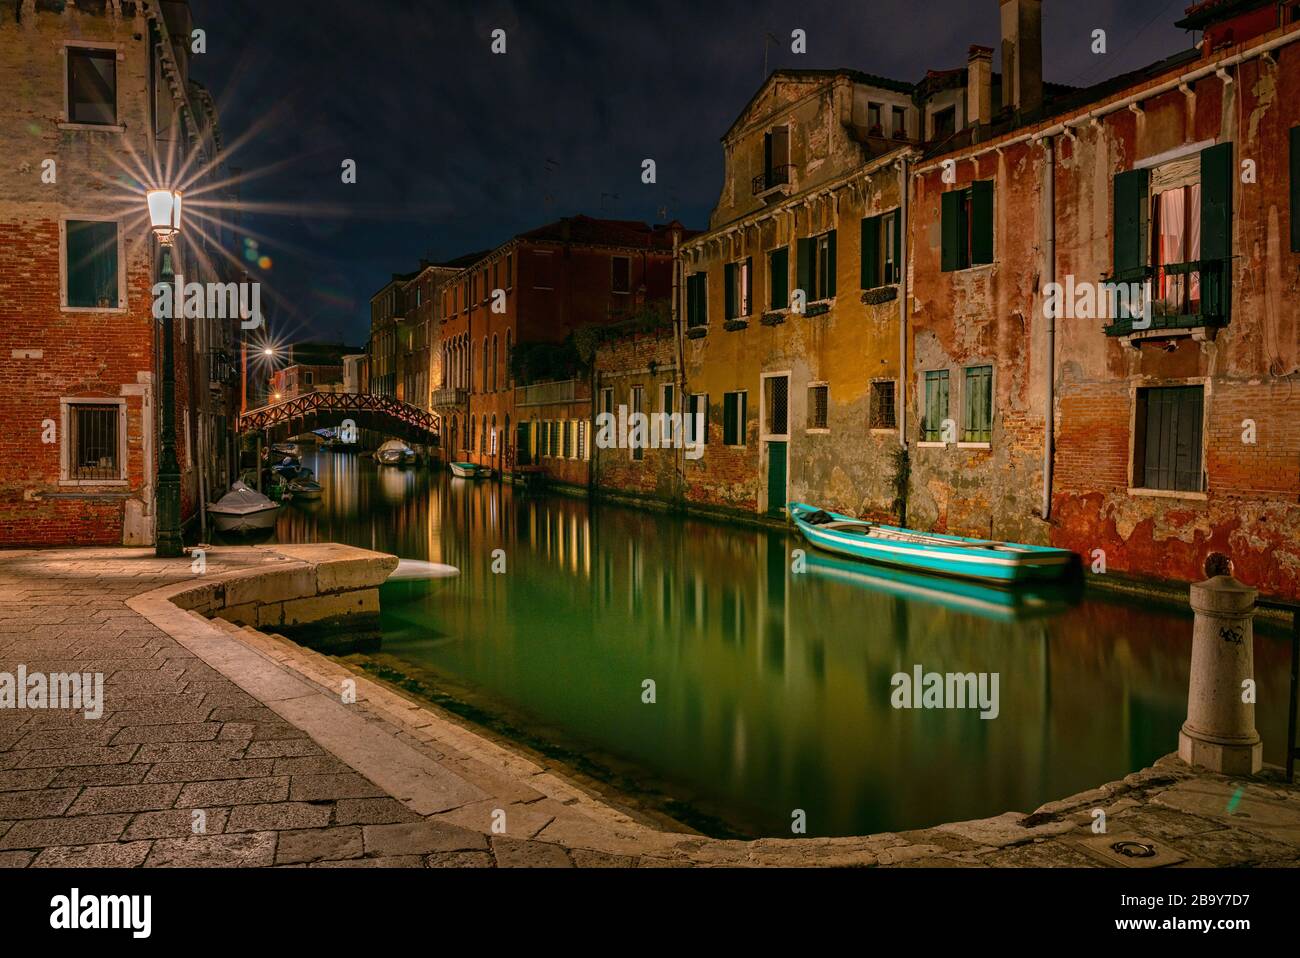 Nachtfoto von Häusern, Straßen und Wasserkanälen in Venedig, Italien Stockfoto